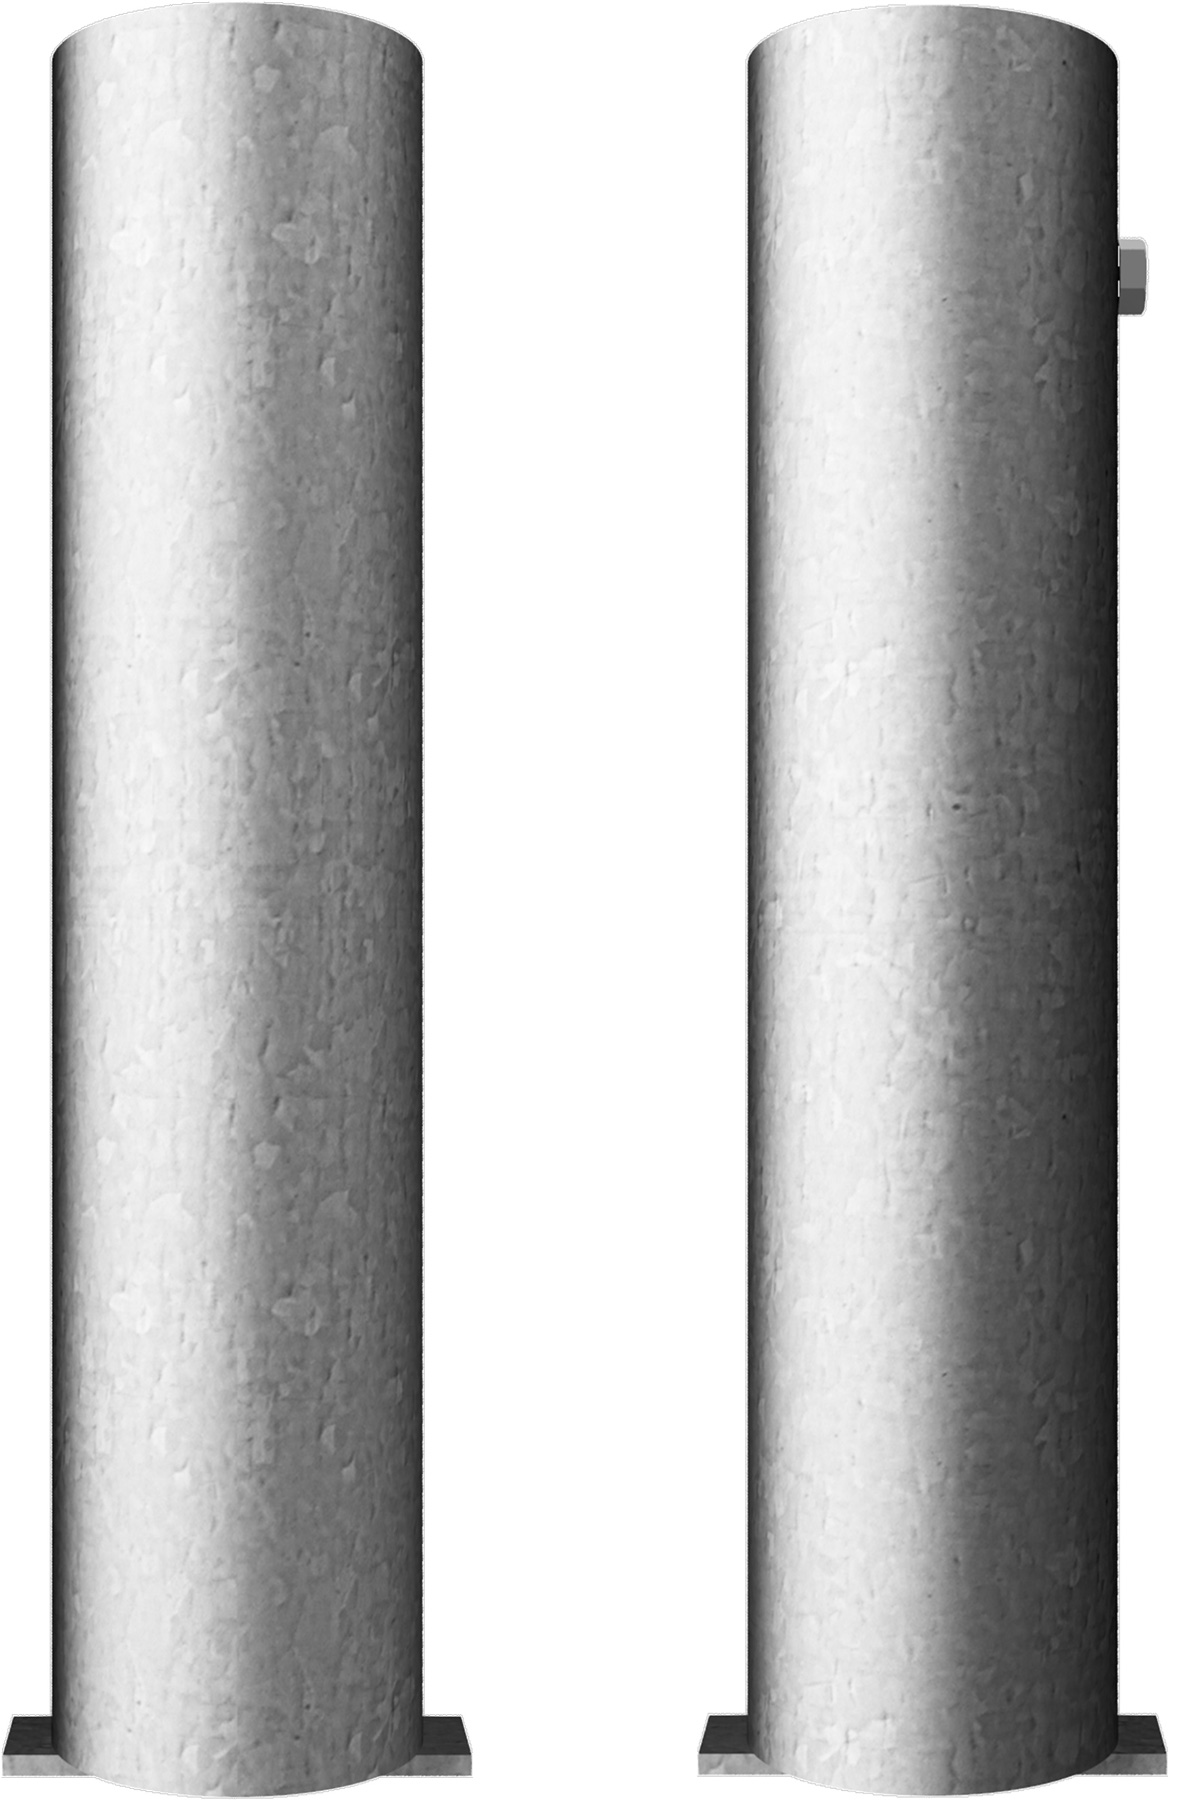 Schake Bodenhülse für Ø 76 mm Pfosten Stahlrohr Hülse für Absperrpfosten - verschiedene Ausführungen (SK-C-476.10) Bild-01